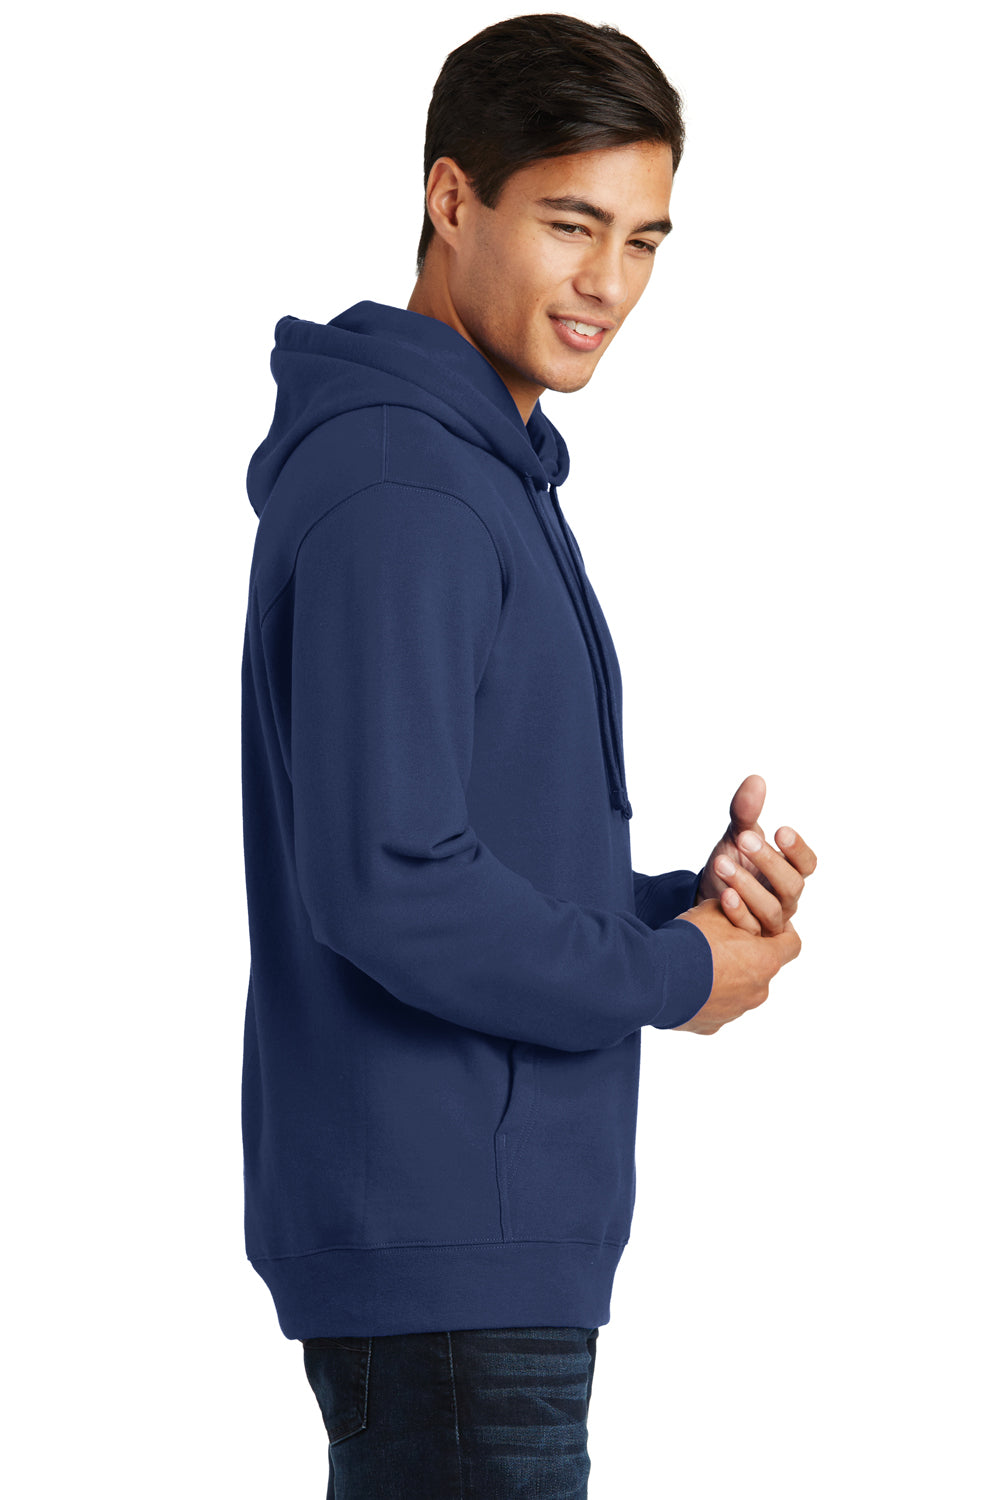 Port & Company PC850H Mens Fan Favorite Fleece Hooded Sweatshirt Hoodie Navy Blue Side